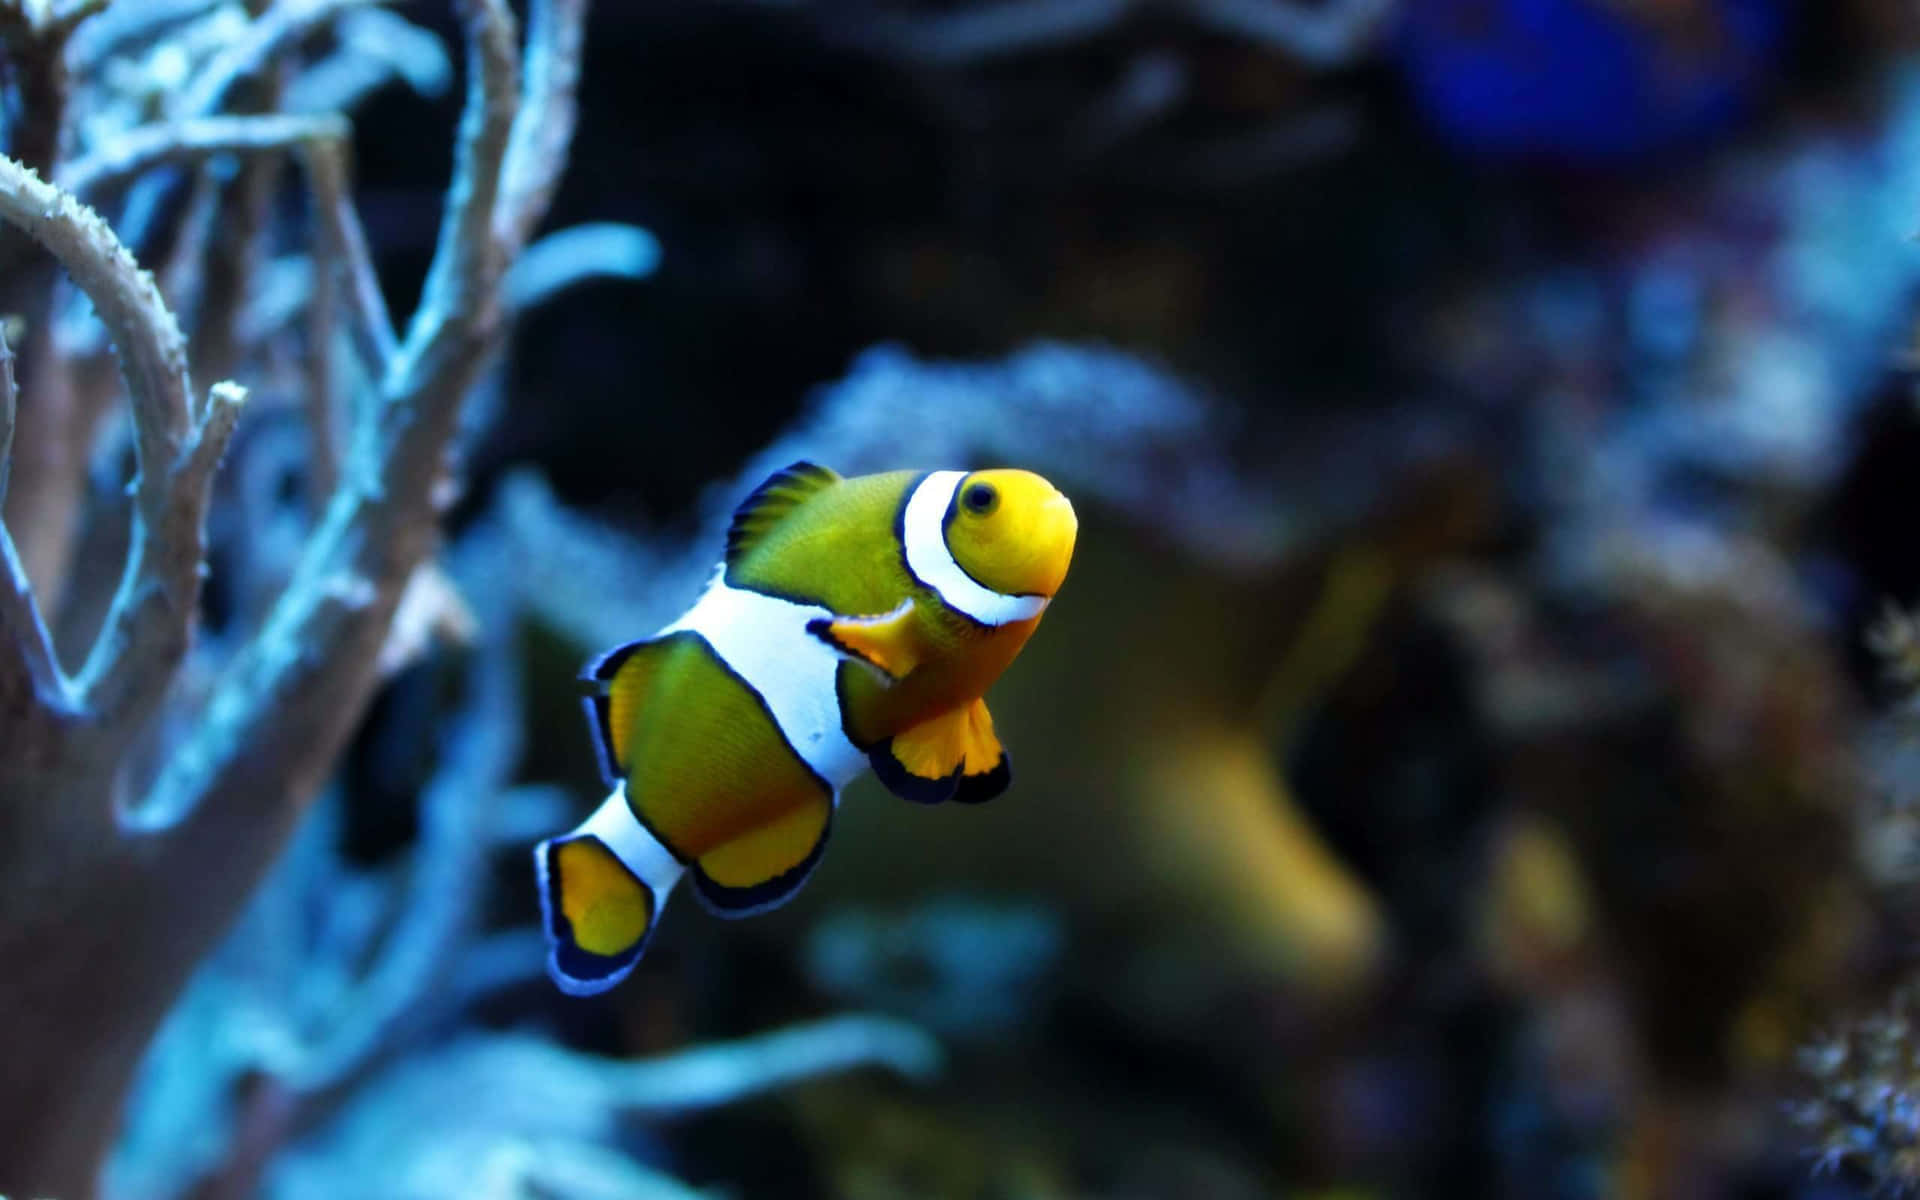 Erhascheeinen Blick Auf Einen Bunt Gefärbten Fisch In Den Tiefen Des Meeres